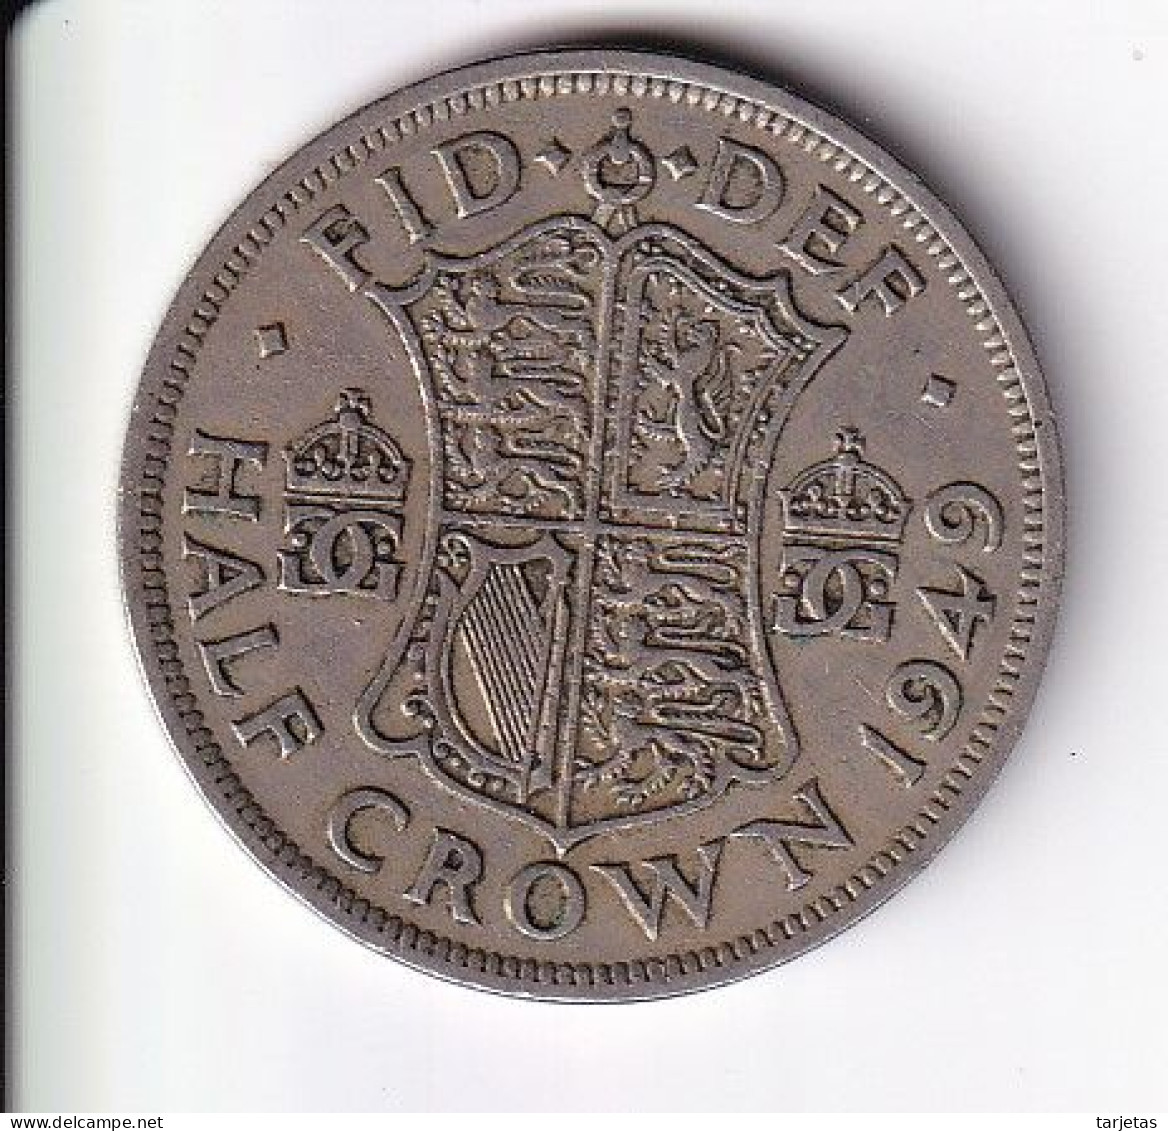 MONEDA DE GRAN BRETAÑA DE 1/2 CROWN DEL AÑO 1949  (COIN) GEORGE VI - K. 1/2 Crown